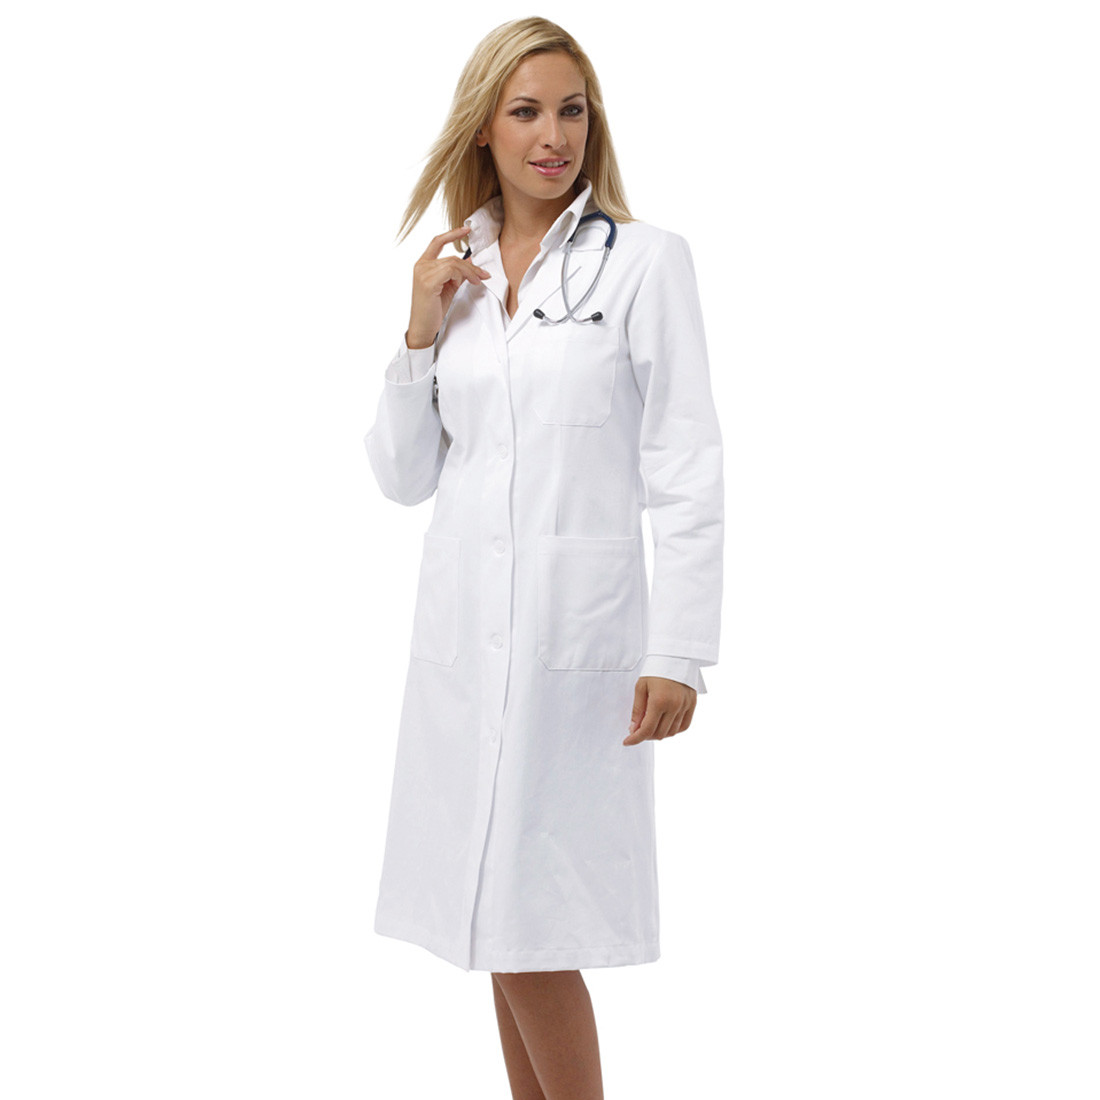 Blouse médical ONER - Les vêtements de protection